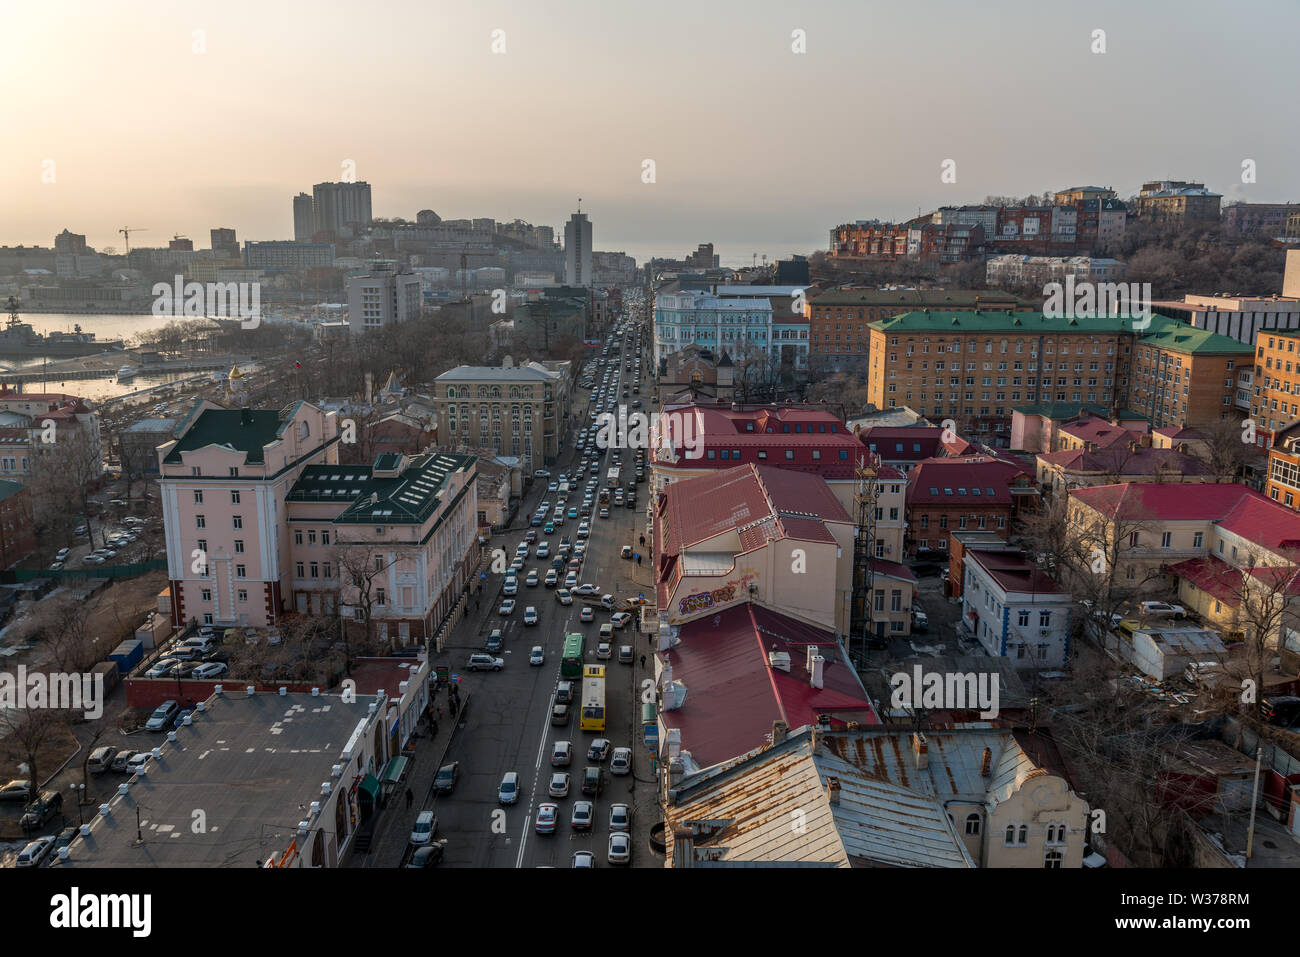 VLADIVOSTOK, RUSSIA - 25 febbraio 2015: Svetlanskaya street view. Svetlanskaya Street è una delle strade principali di Vladivostok, Russia. Foto Stock